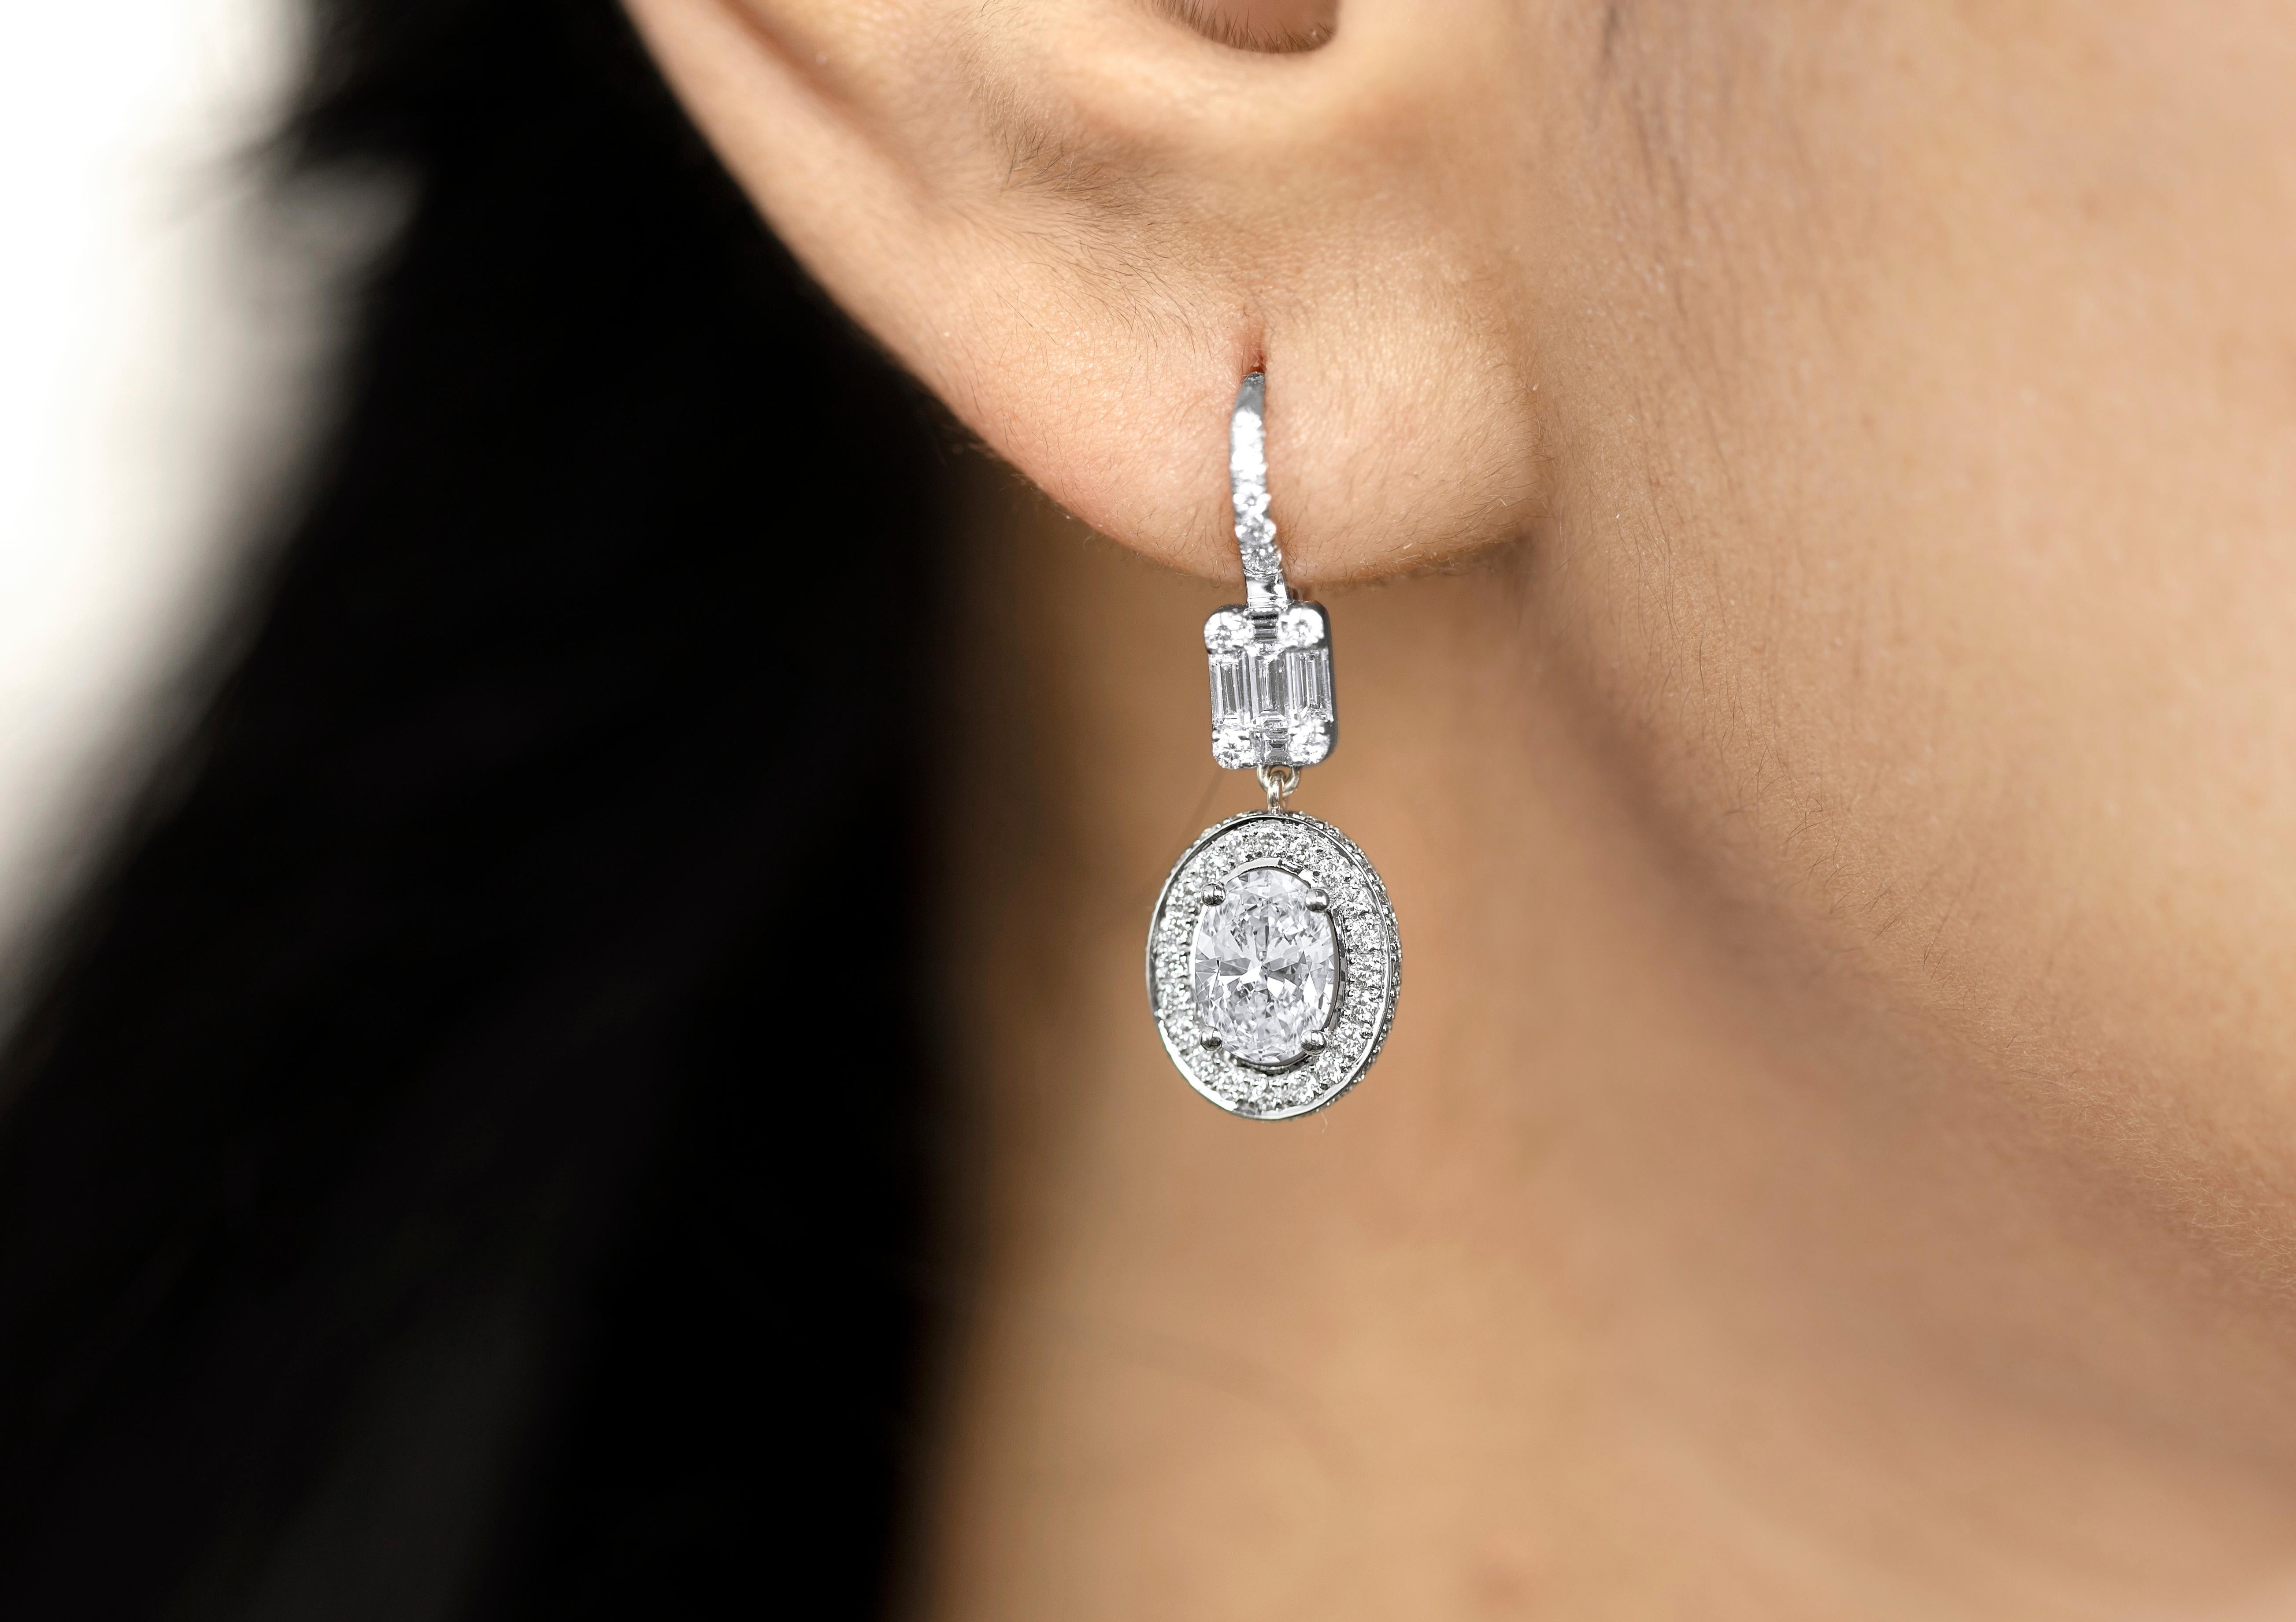 GIA Bericht zertifiziert 1 Karat Art Deco Diamant Baguette Schliff Ohrringe mit Illusion Einstellung, E F VS 


Erhältlich in 18 Karat Weißgold.

Das gleiche Design kann auch mit anderen Edelsteinen auf Anfrage hergestellt werden.

Einzelheiten zum